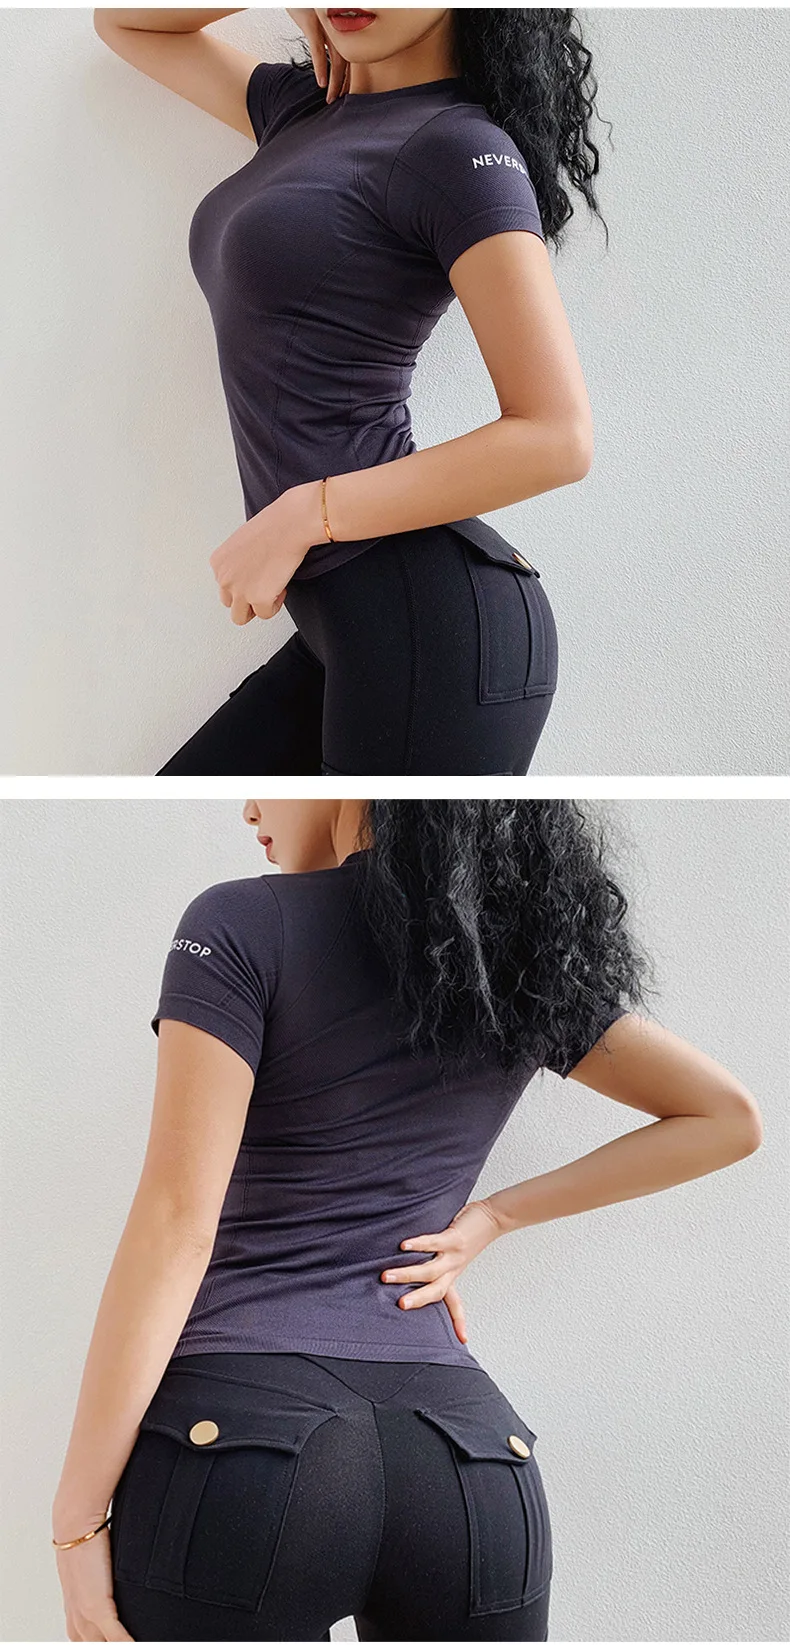 Однотонные футболки с надписью для спортзала и йоги, женские дышащие топы с коротким рукавом для тренировок, спортивная одежда для бега, быстросохнущая Спортивная футболка для фитнеса